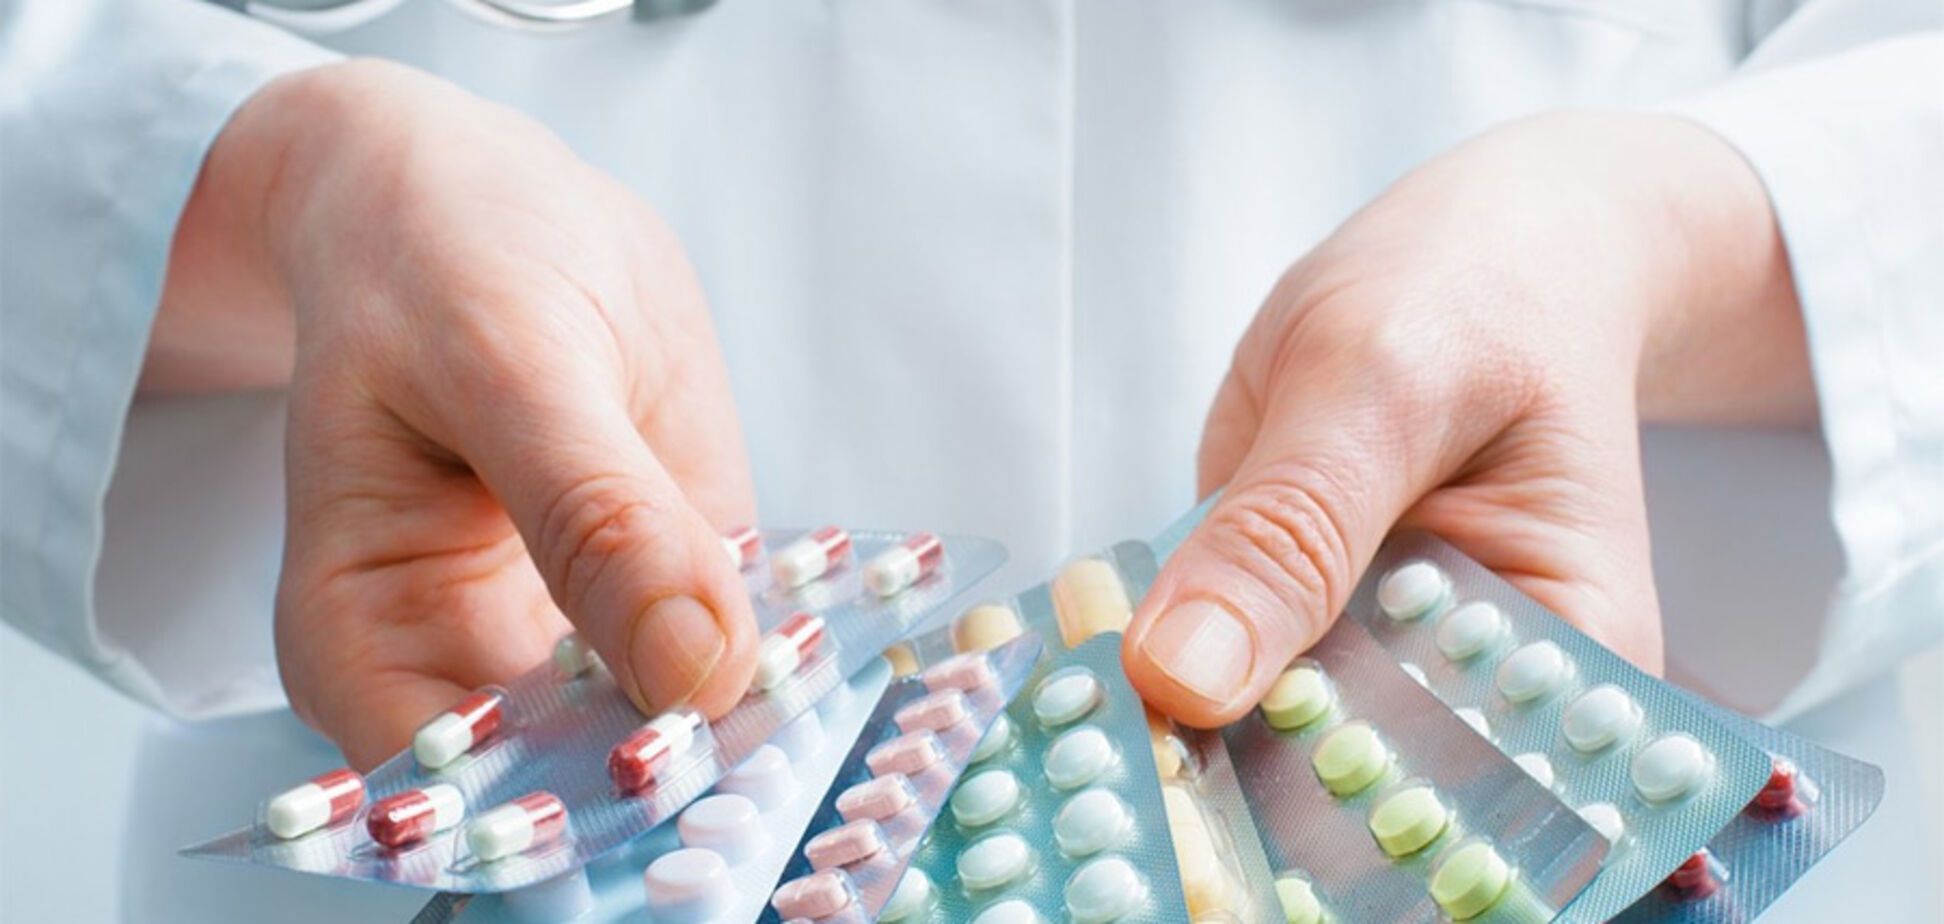 Бесплатные лекарства: где, как и какие медикаменты раздают аптеки 